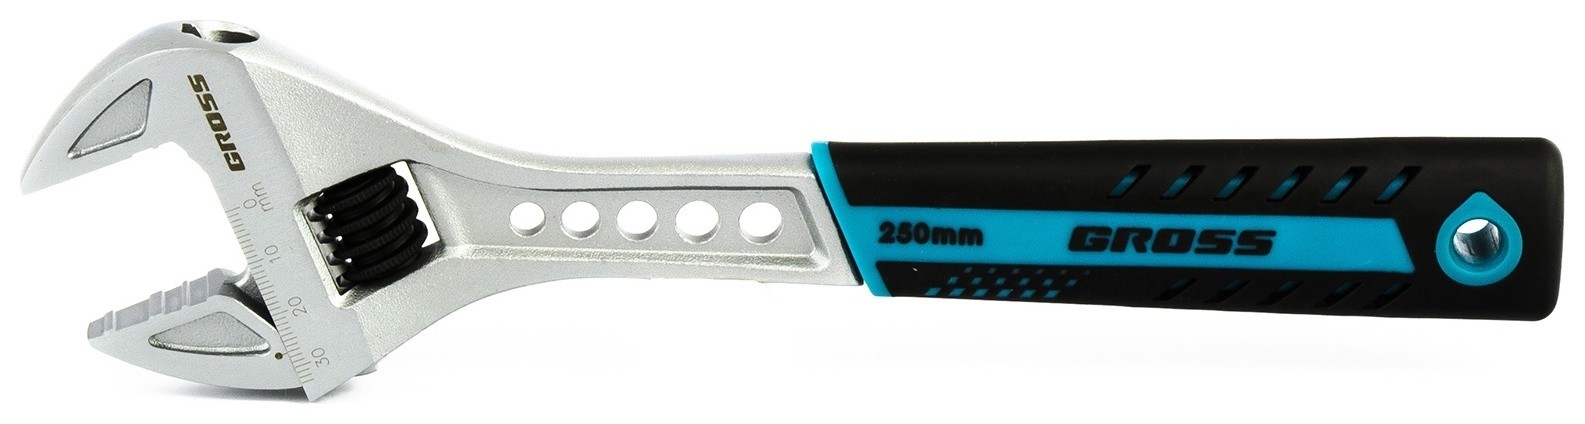 Ключ разводной, 250 мм, Crv, двухкомпонентная ручка